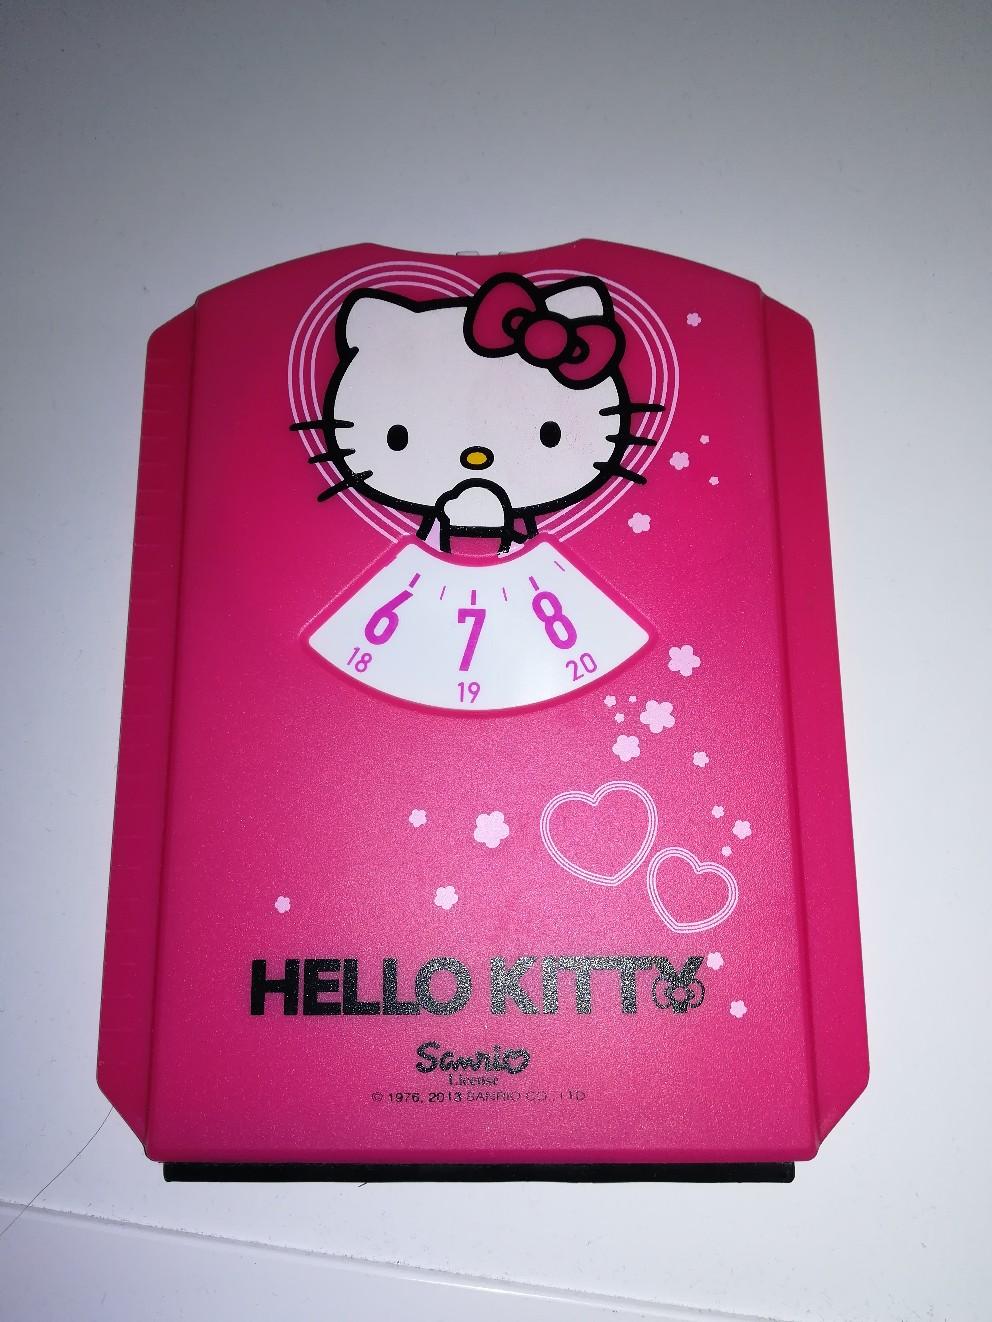 1 Stück "Hello Kitty" Parkscheibe